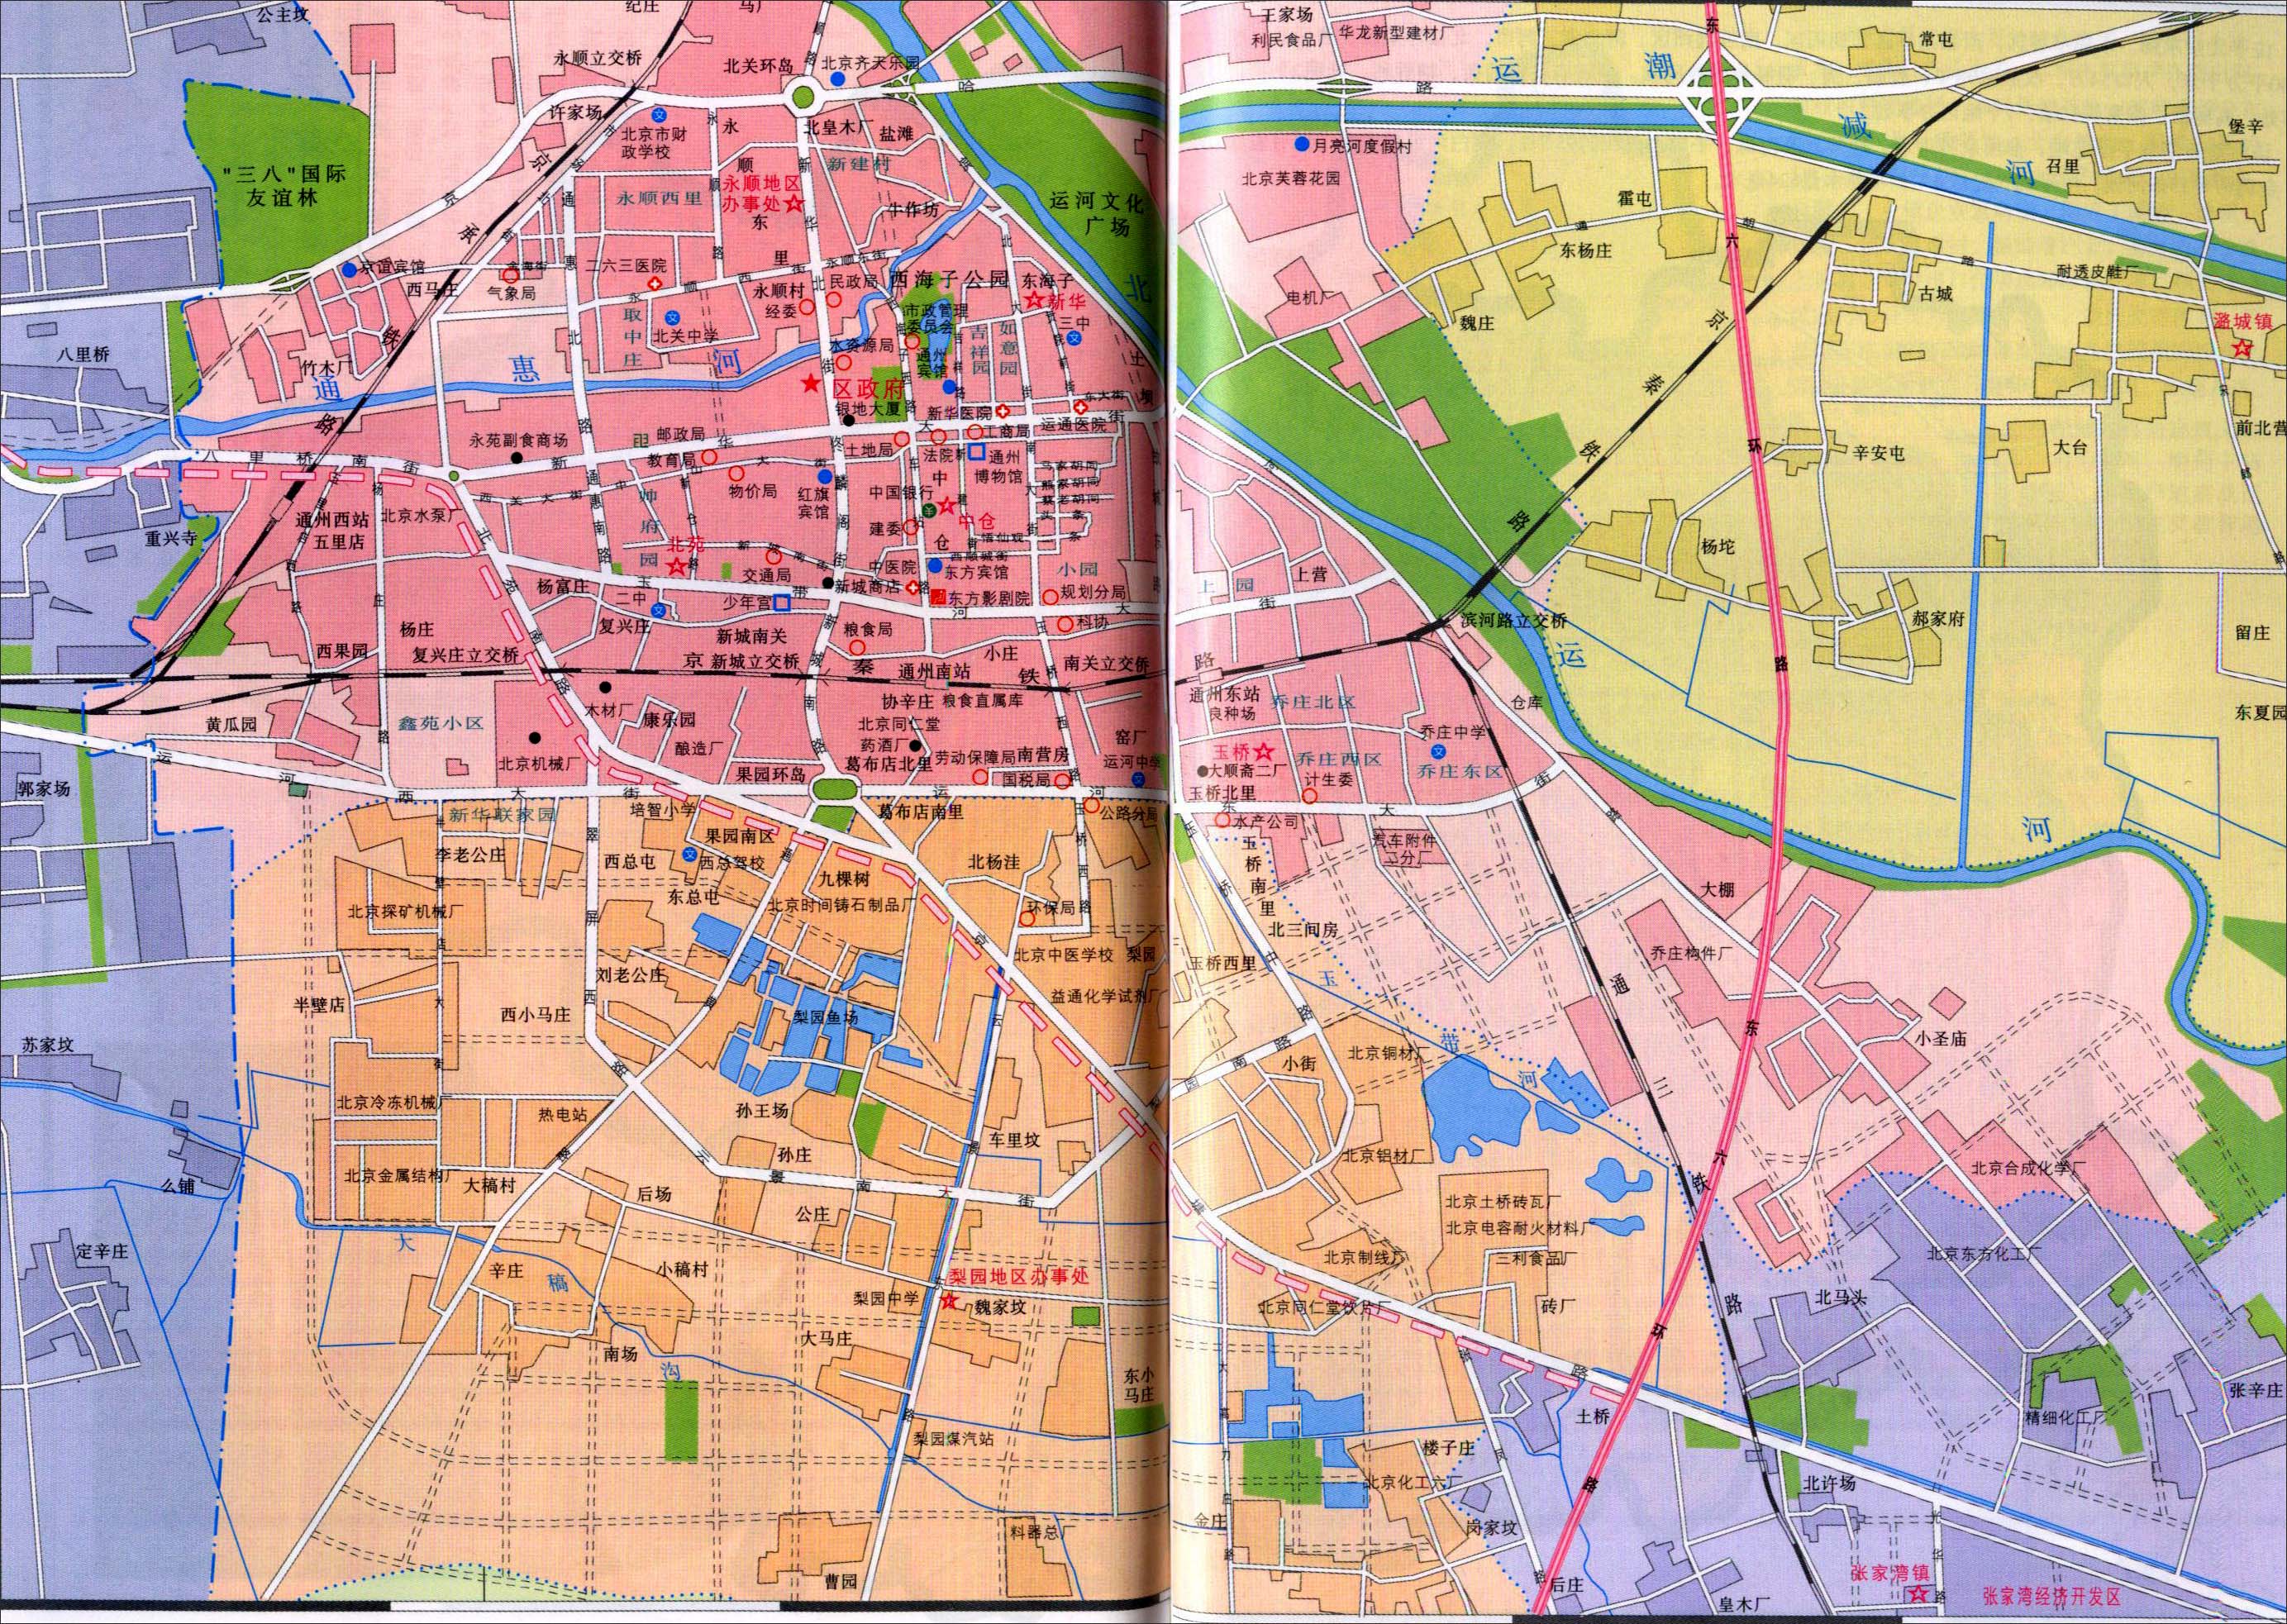 大足区城区地图内容|大足区城区地图版面设计图片